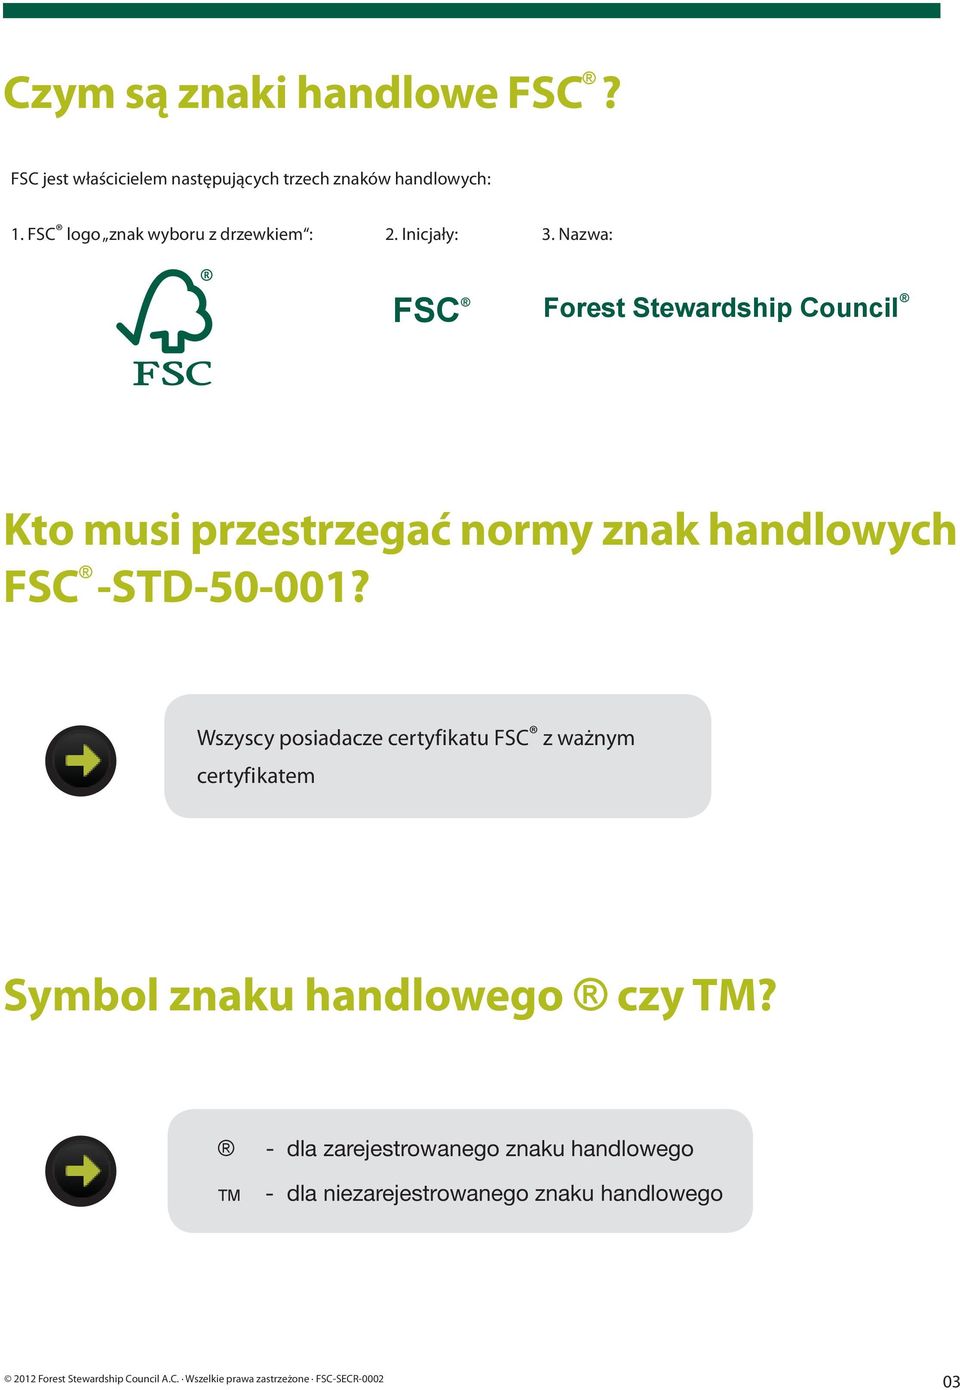 Nazwa: FSC Forest Stewardship Council Kto musi przestrzegać normy znak handlowych FSC -STD-50-001?